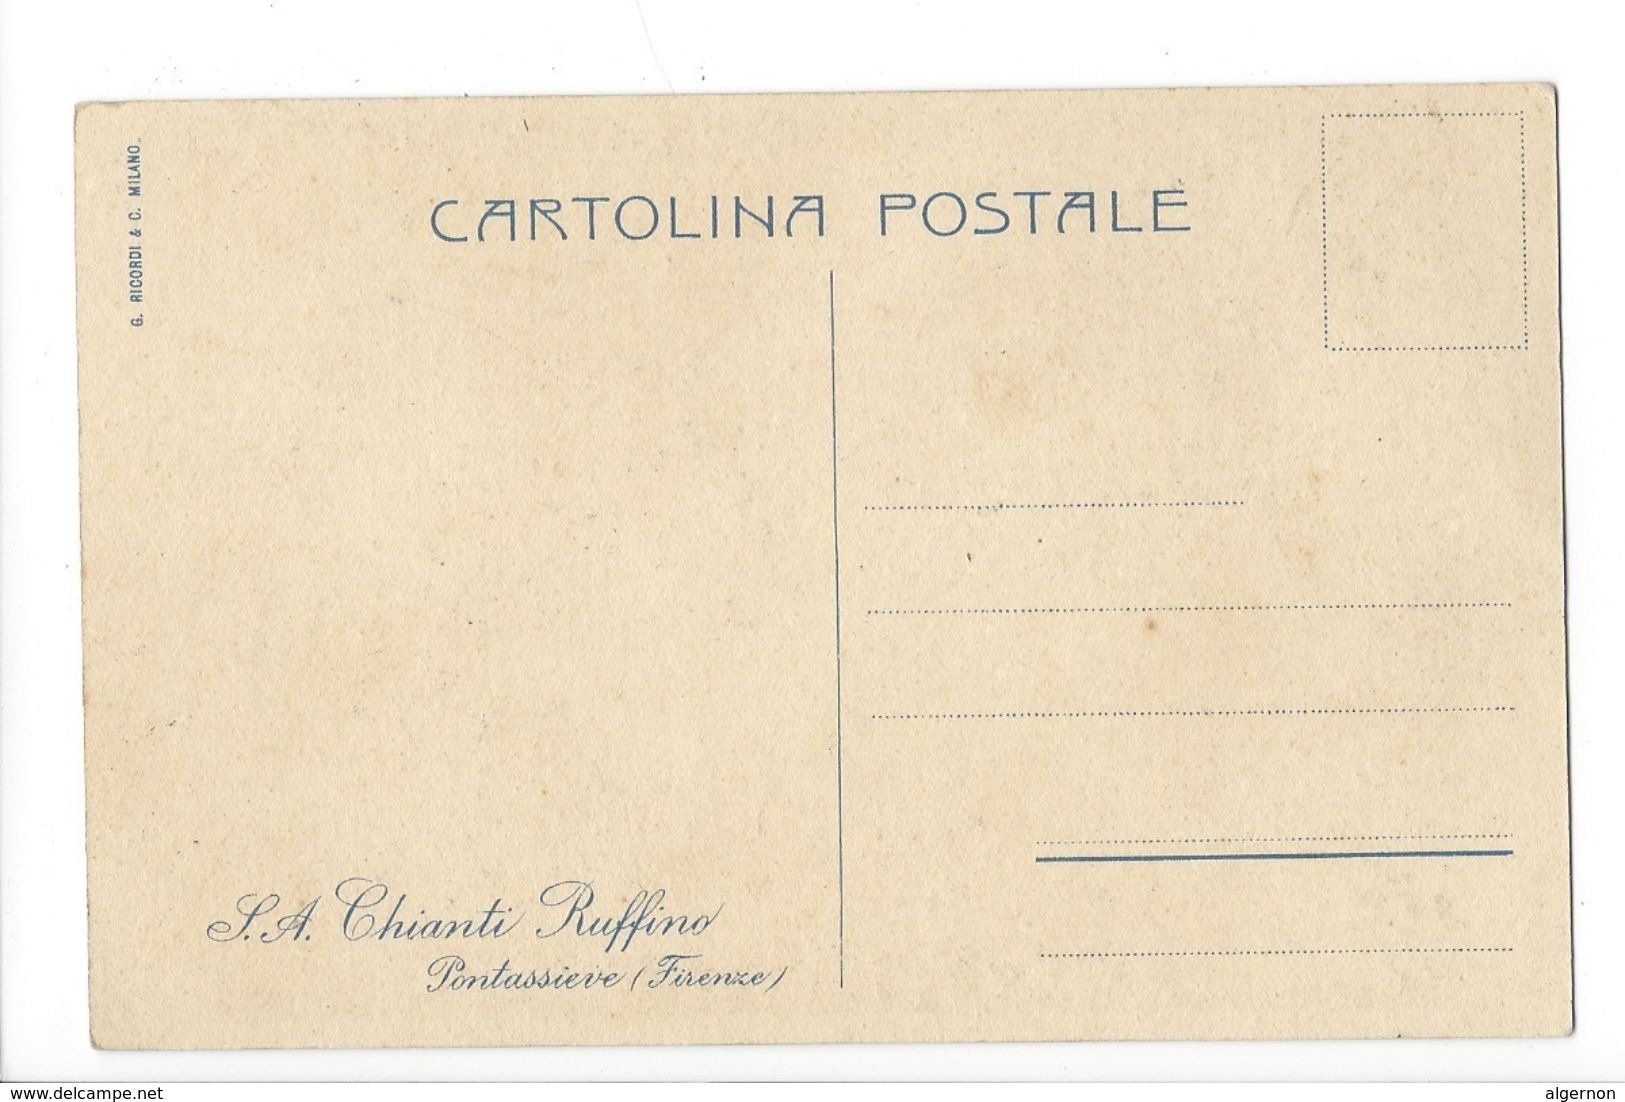 18984 - Chianti Ruffino Pontassieve Firenze - Publicité